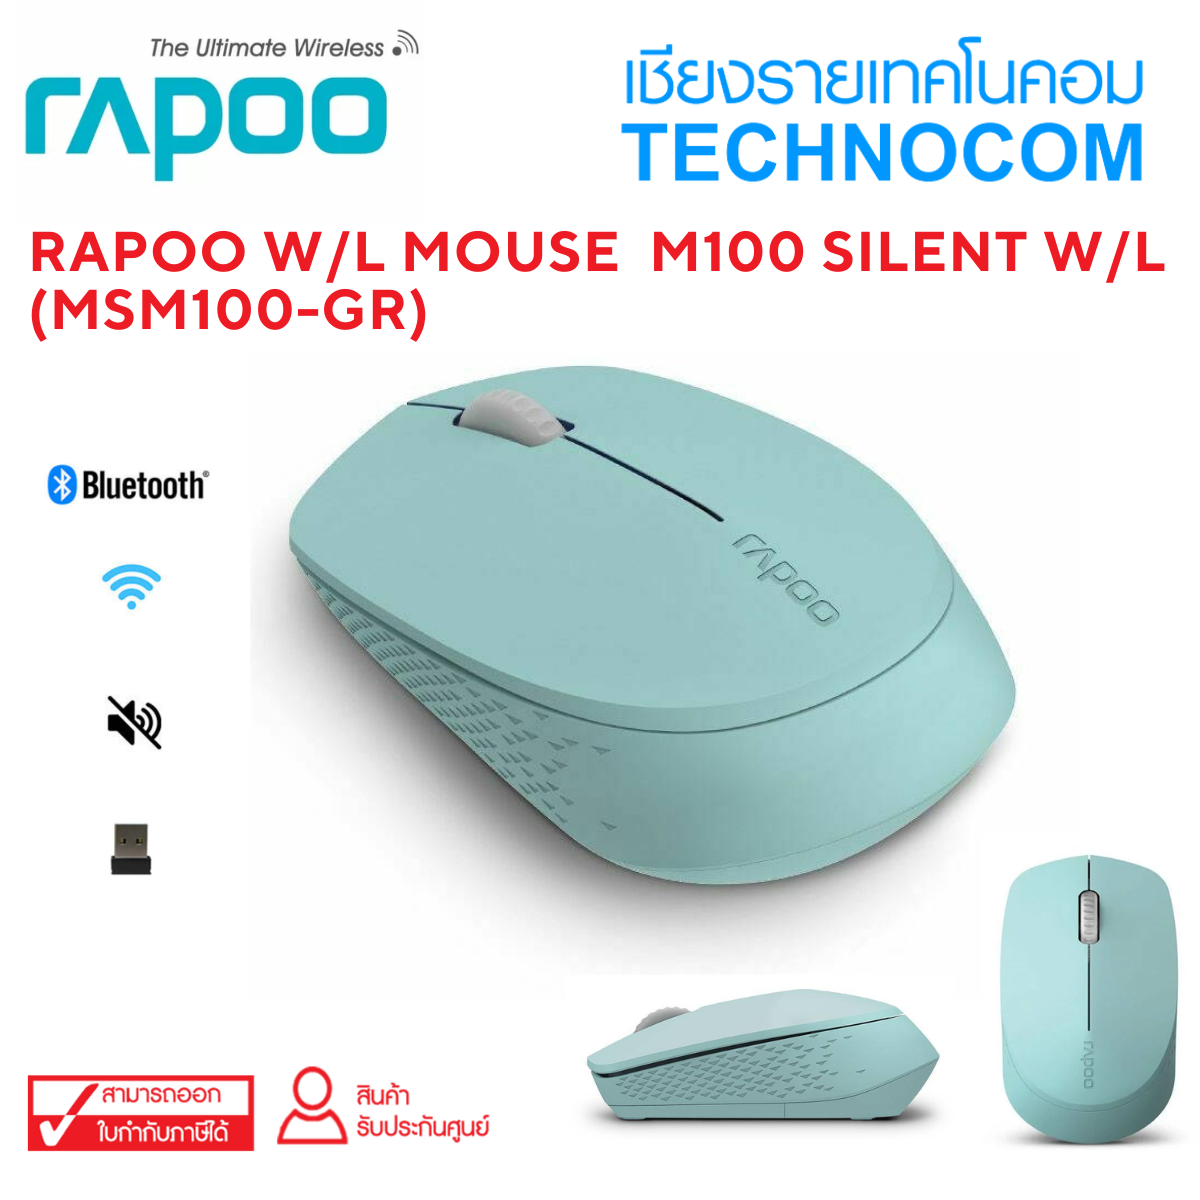 RAPOO W/L MOUSE  M100 SILENT W/L  (MSM100-GR)